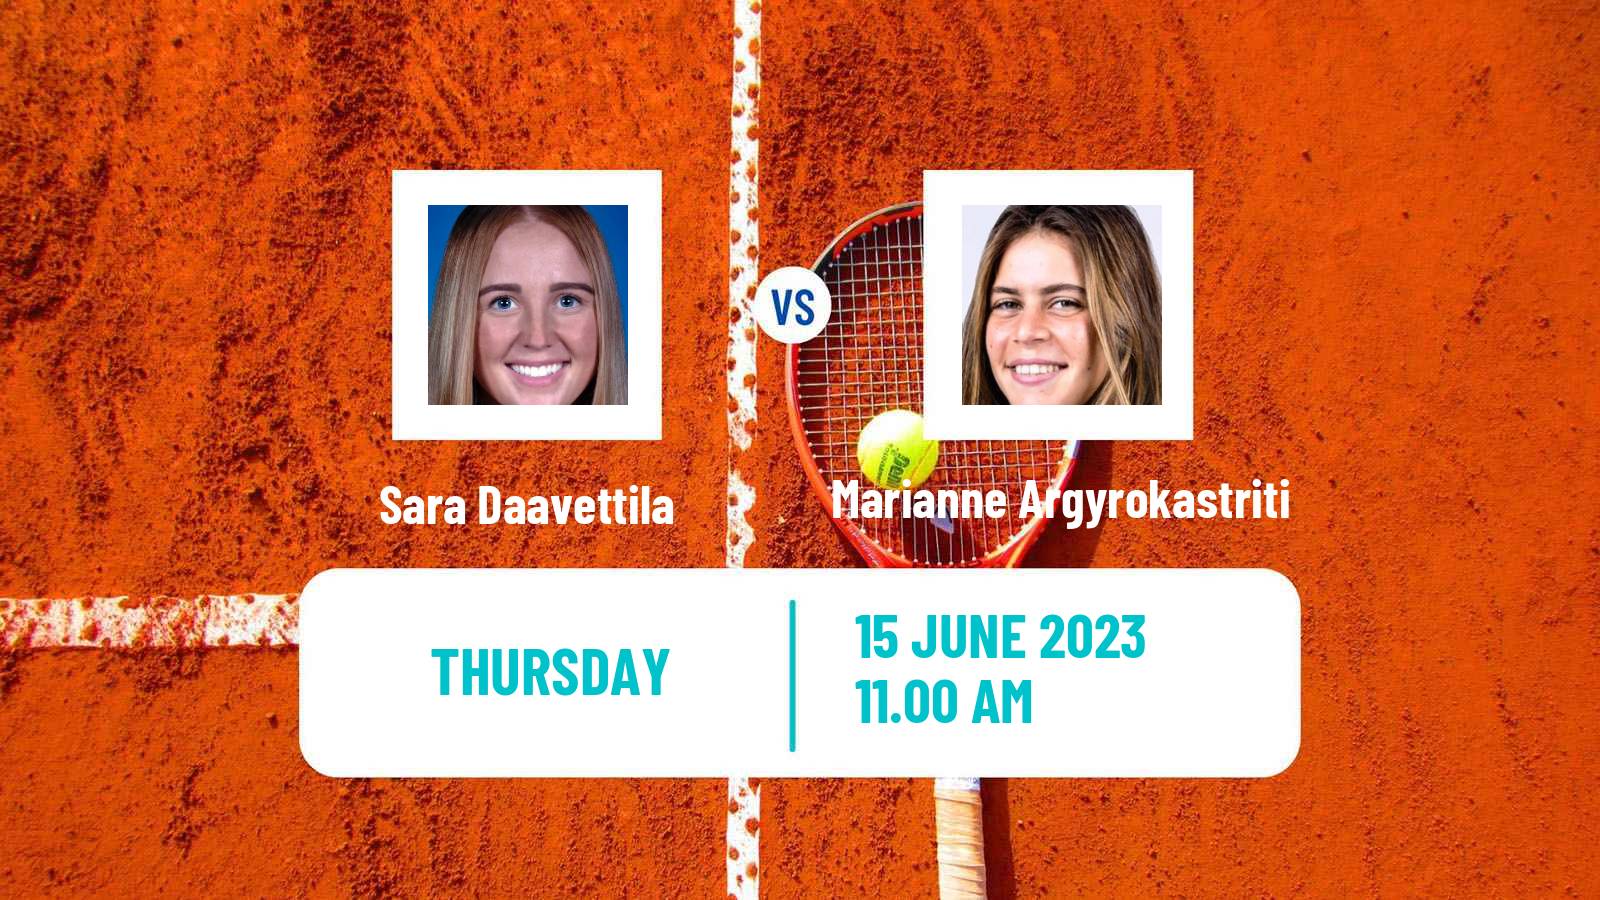 Tennis ITF W15 San Diego Ca 2 Women Sara Daavettila - Marianne Argyrokastriti